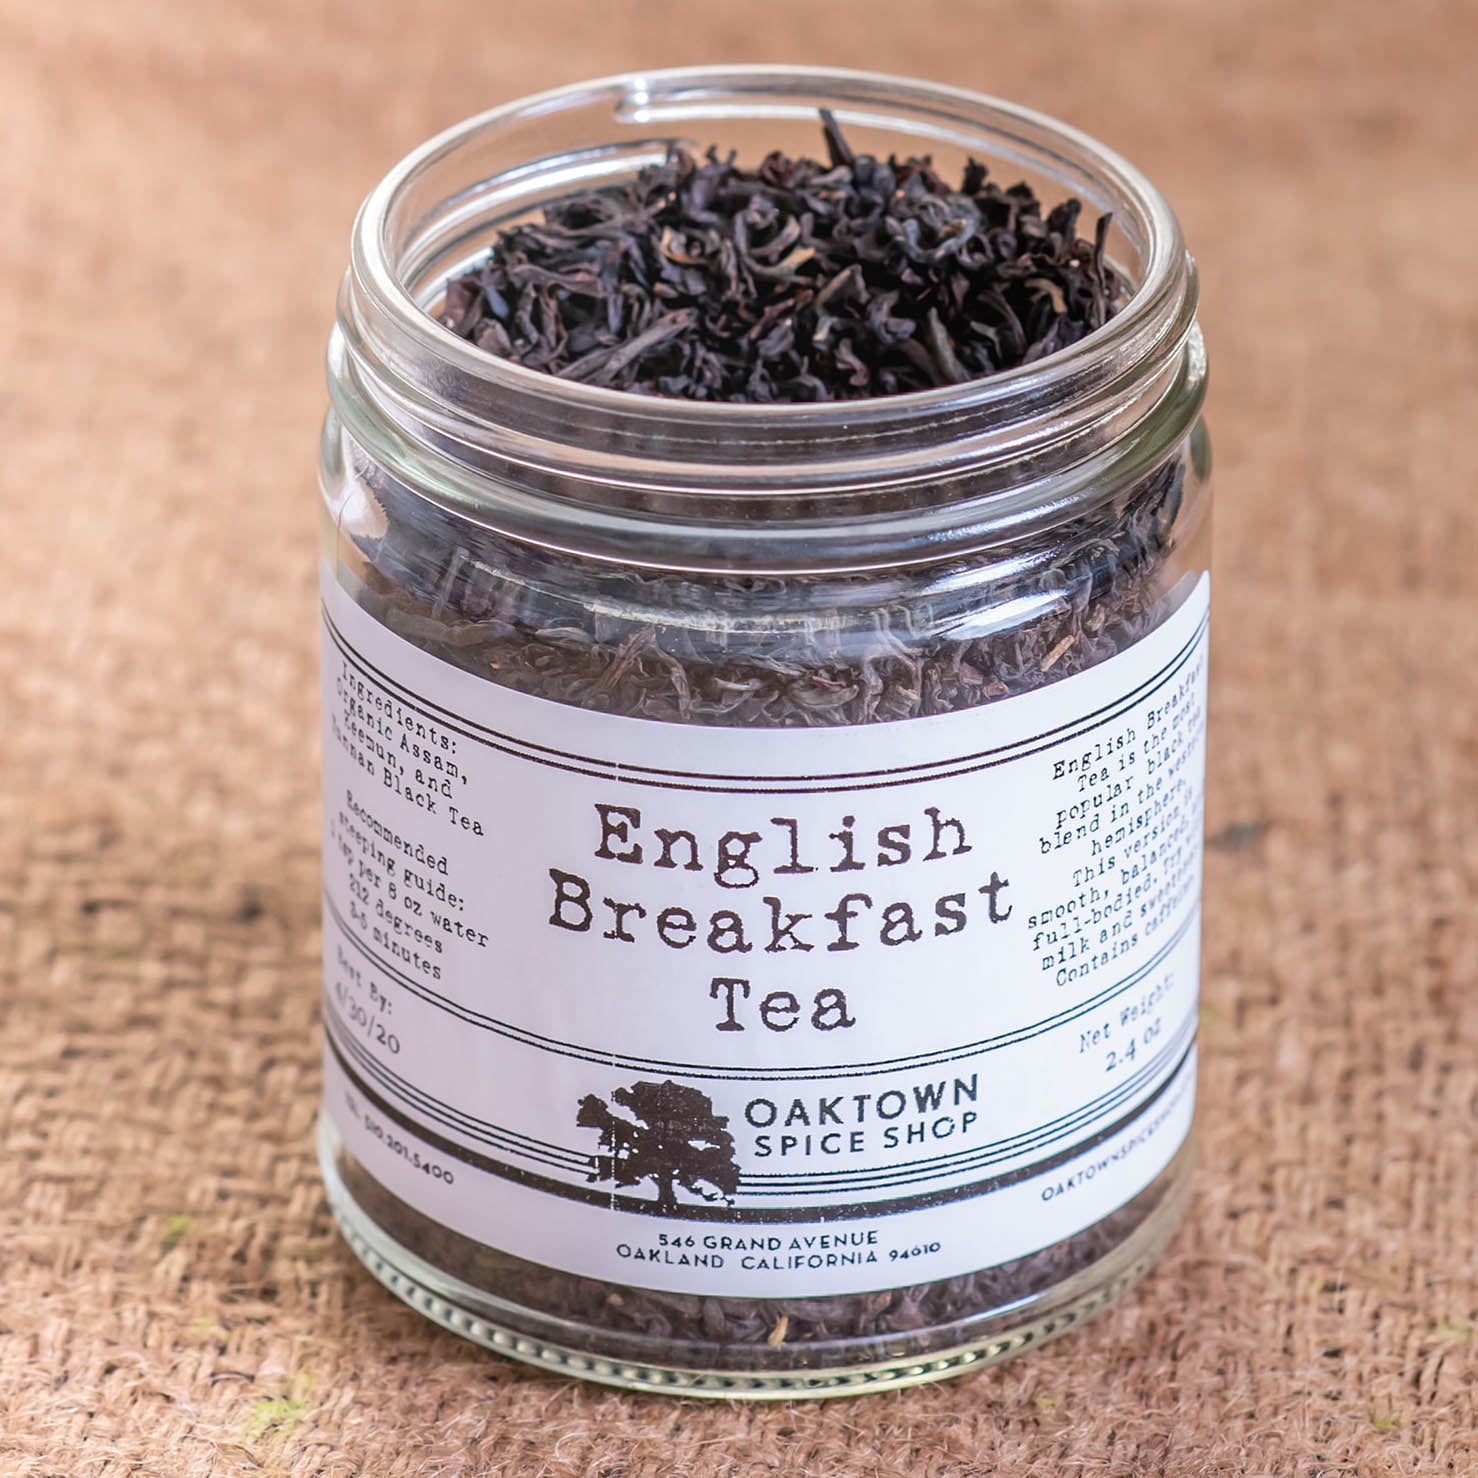 English Breakfast Tea by Oaktown Spice Shop is the most popular black tea blend in the western hemisphere